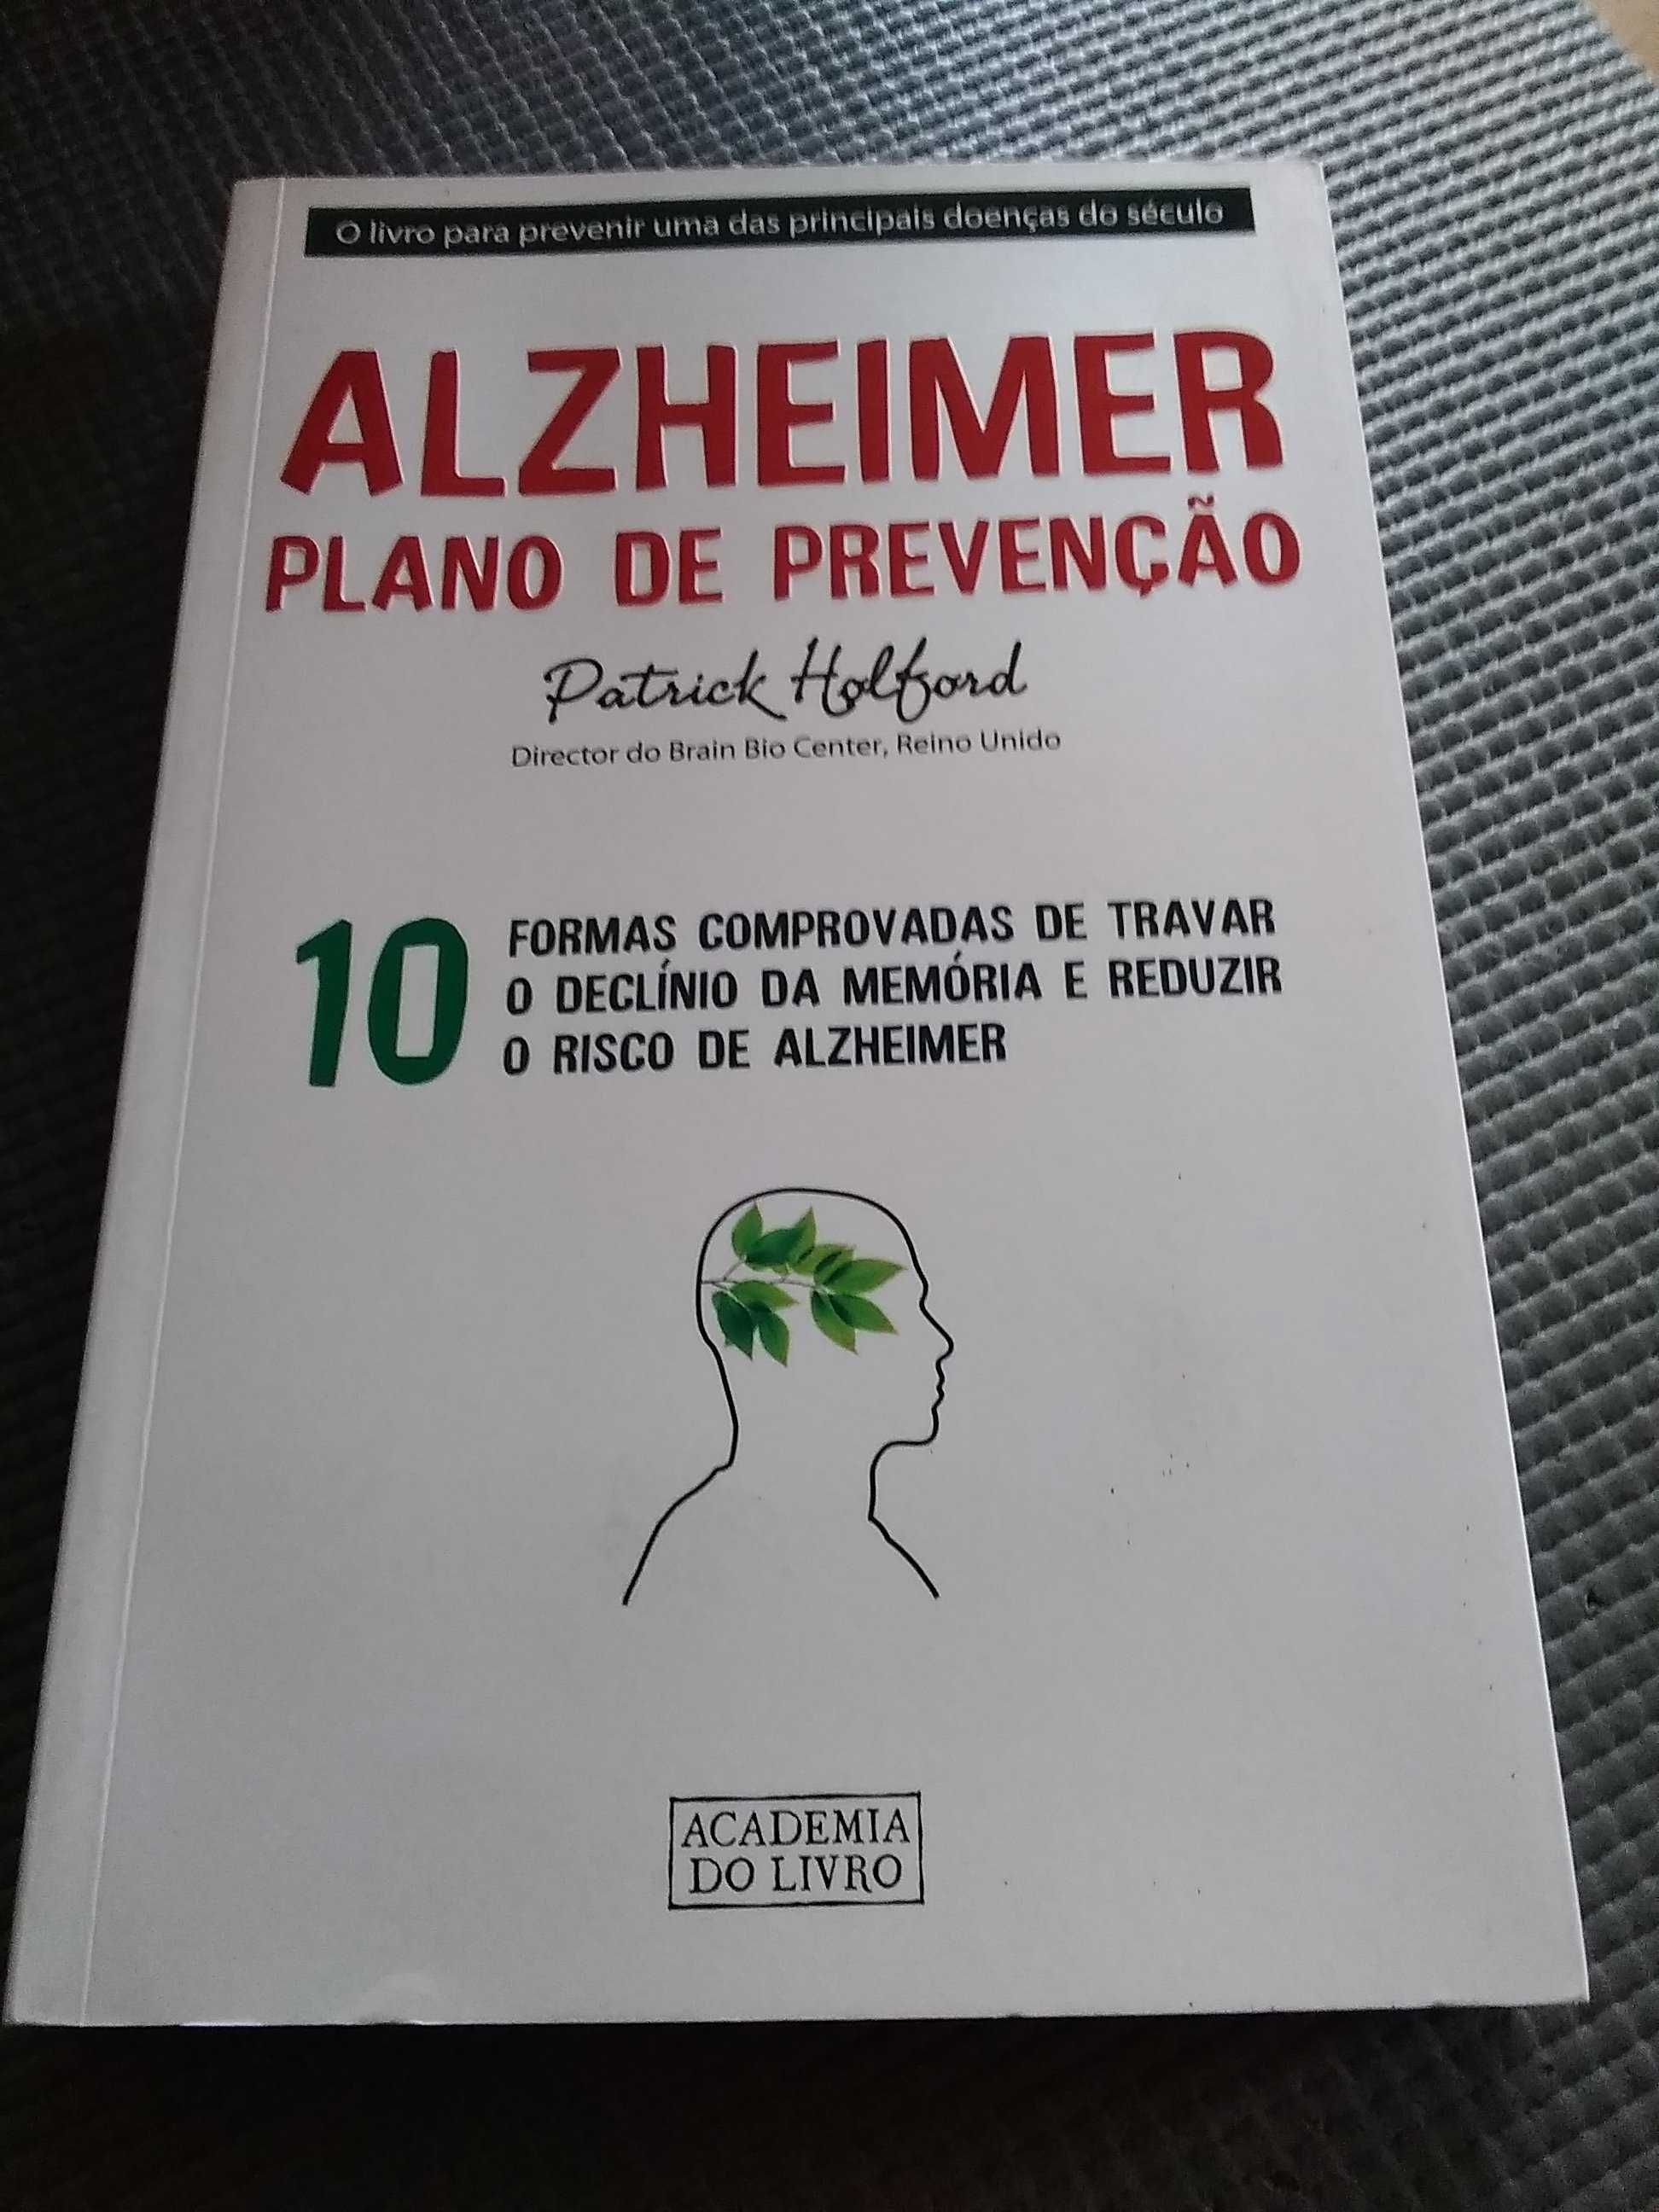 Alzheimer Plano de prevenção de Patrick Holford